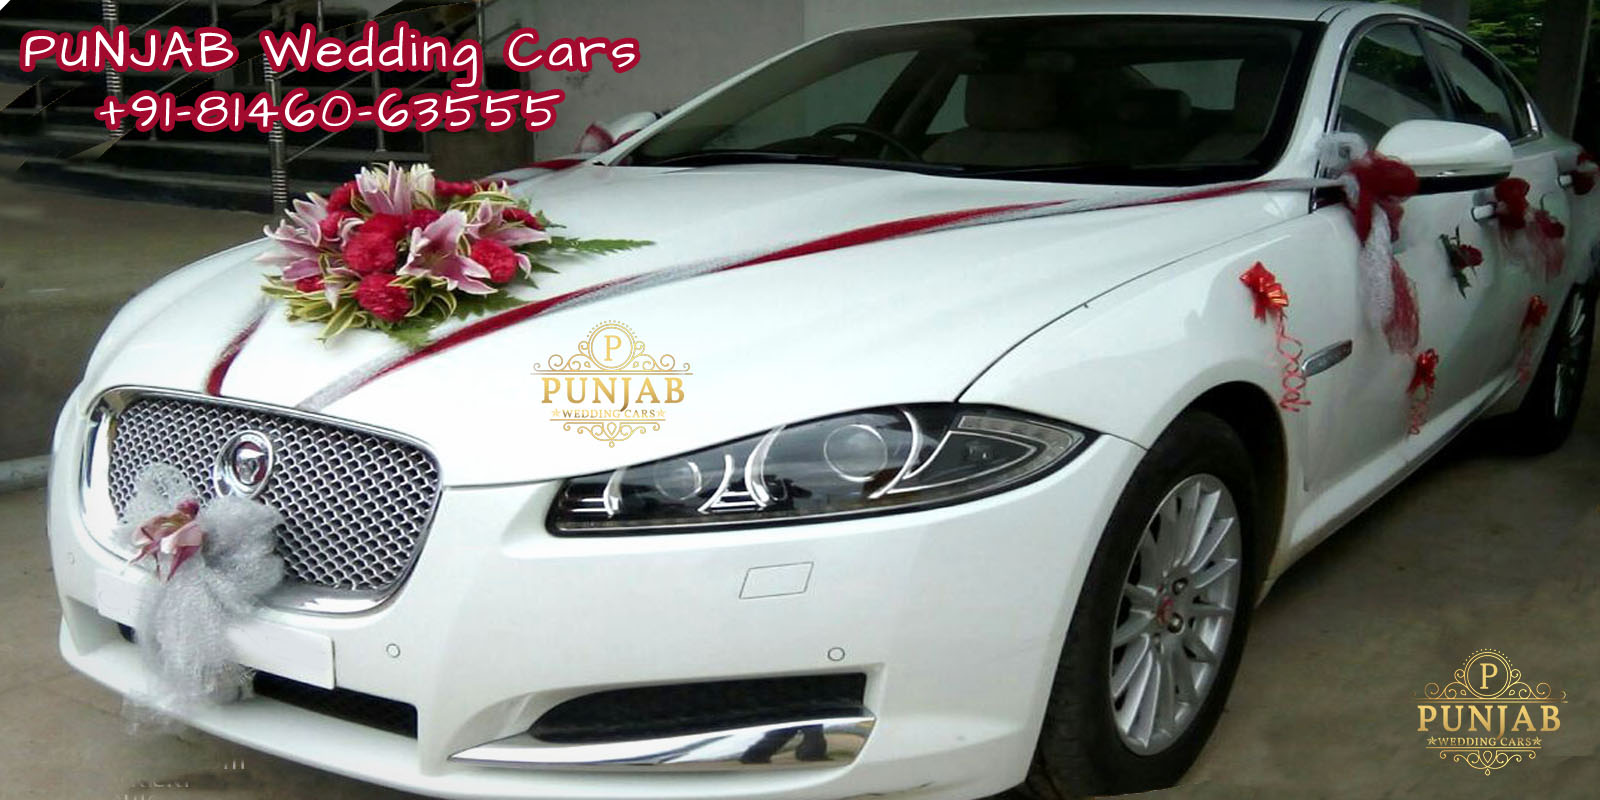 WEDDING CARS - White Jaguar XF Luxury Edition Decorated Available in Chandigarh, Jalandhar, Ludhiana, Amritsar, Barnala, Bathinda, Hoshiarpur, Faridkot, Fatehgarh Sahib, Fazilka, Firozpur, Gurdaspur, Kapurthala, Mansa, Moga, Ajitgarh, Ropar, Muktsar, Shahid Bhagat Singh Nagar(first known as Nawan Shahr), Sangrur, Patiala, Pathankot, Tarn Taran